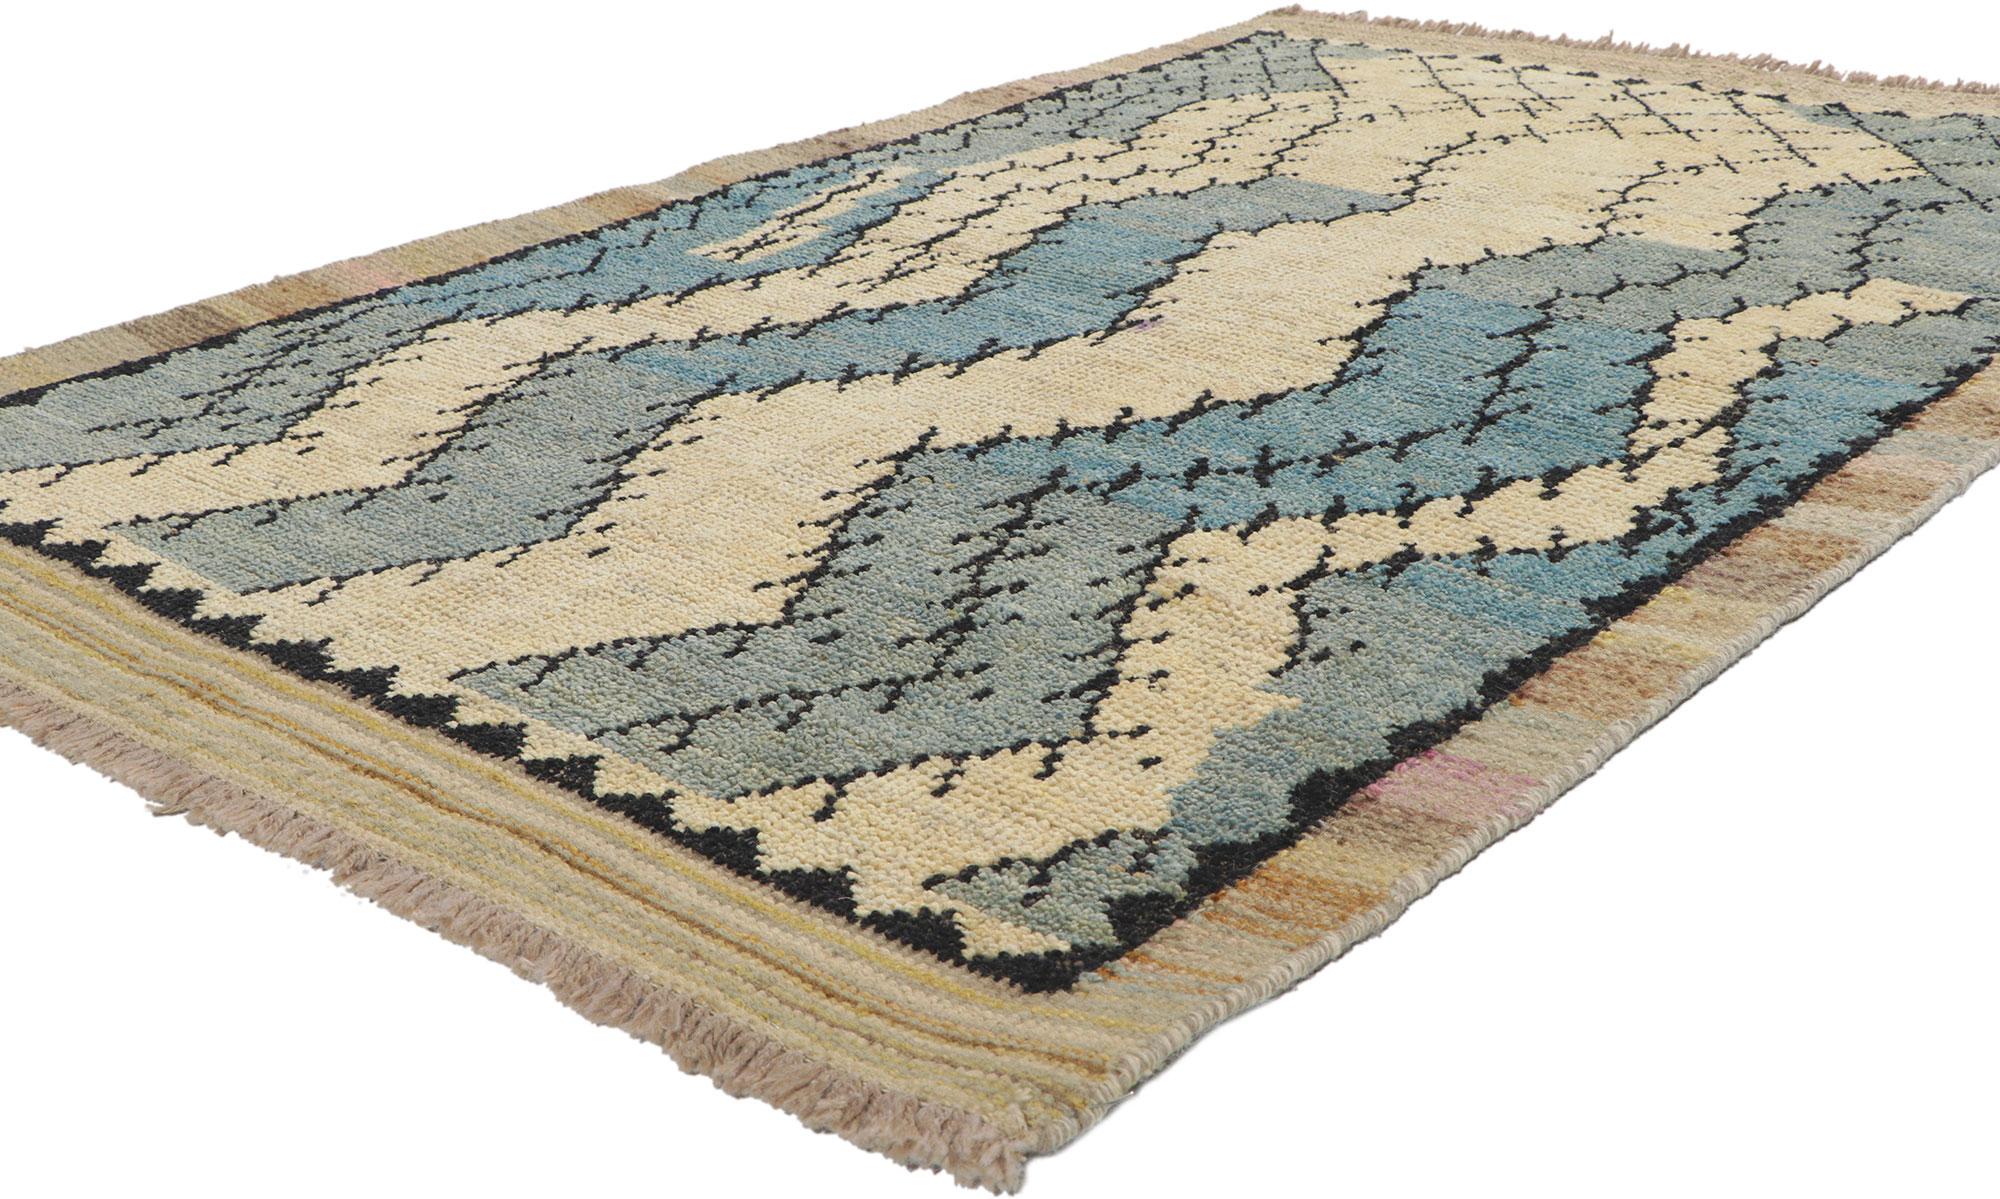 80716 Neu Zeitgenössischer marokkanischer Strukturteppich 04'02 x 06'07. Dieser marokkanische Teppich aus handgeknüpfter Wolle besticht durch sein ausdrucksstarkes Design, seine unglaubliche Detailtreue und seine Textur und ist eine faszinierende